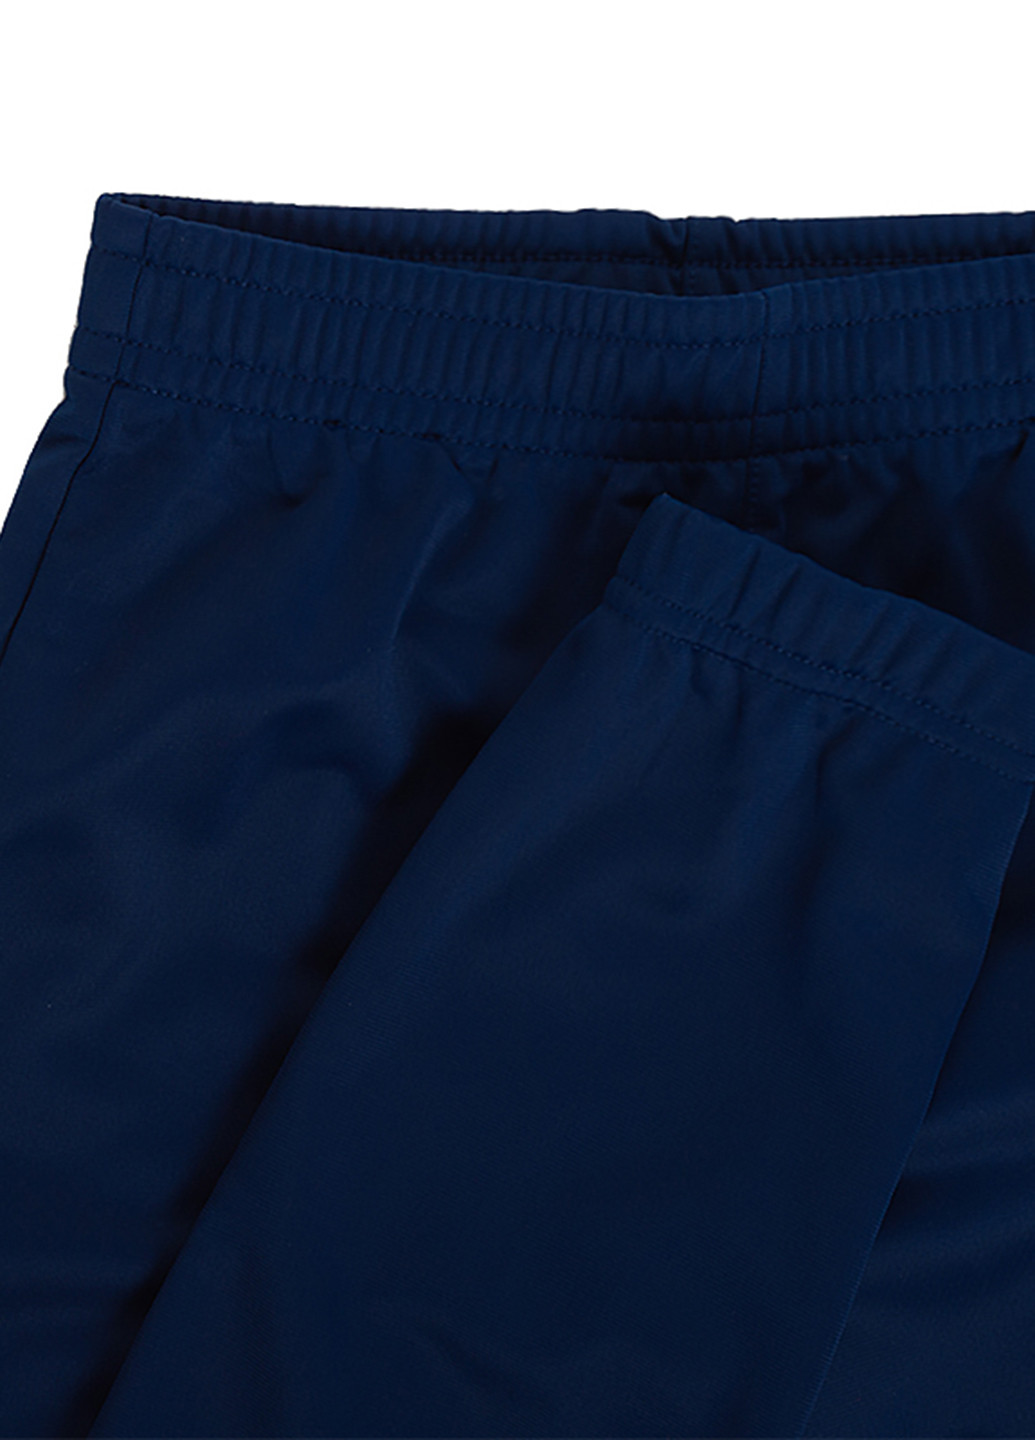 Синій демісезонний костюм (кофта, штани) брючний Nike U NSW HBR POLY TRACKSUIT